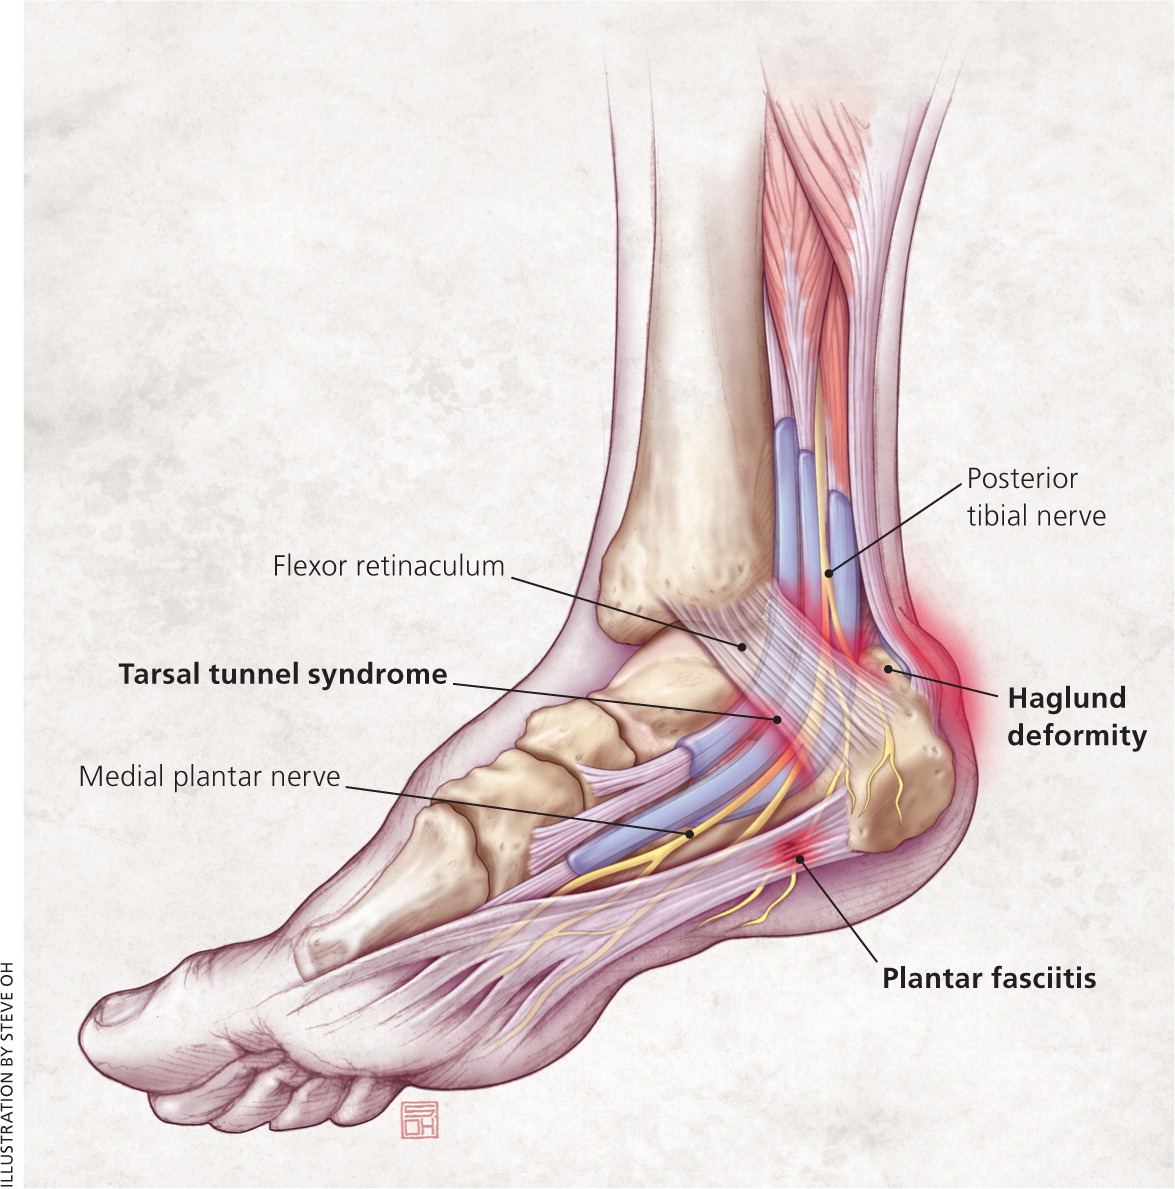 medial aspect of heel